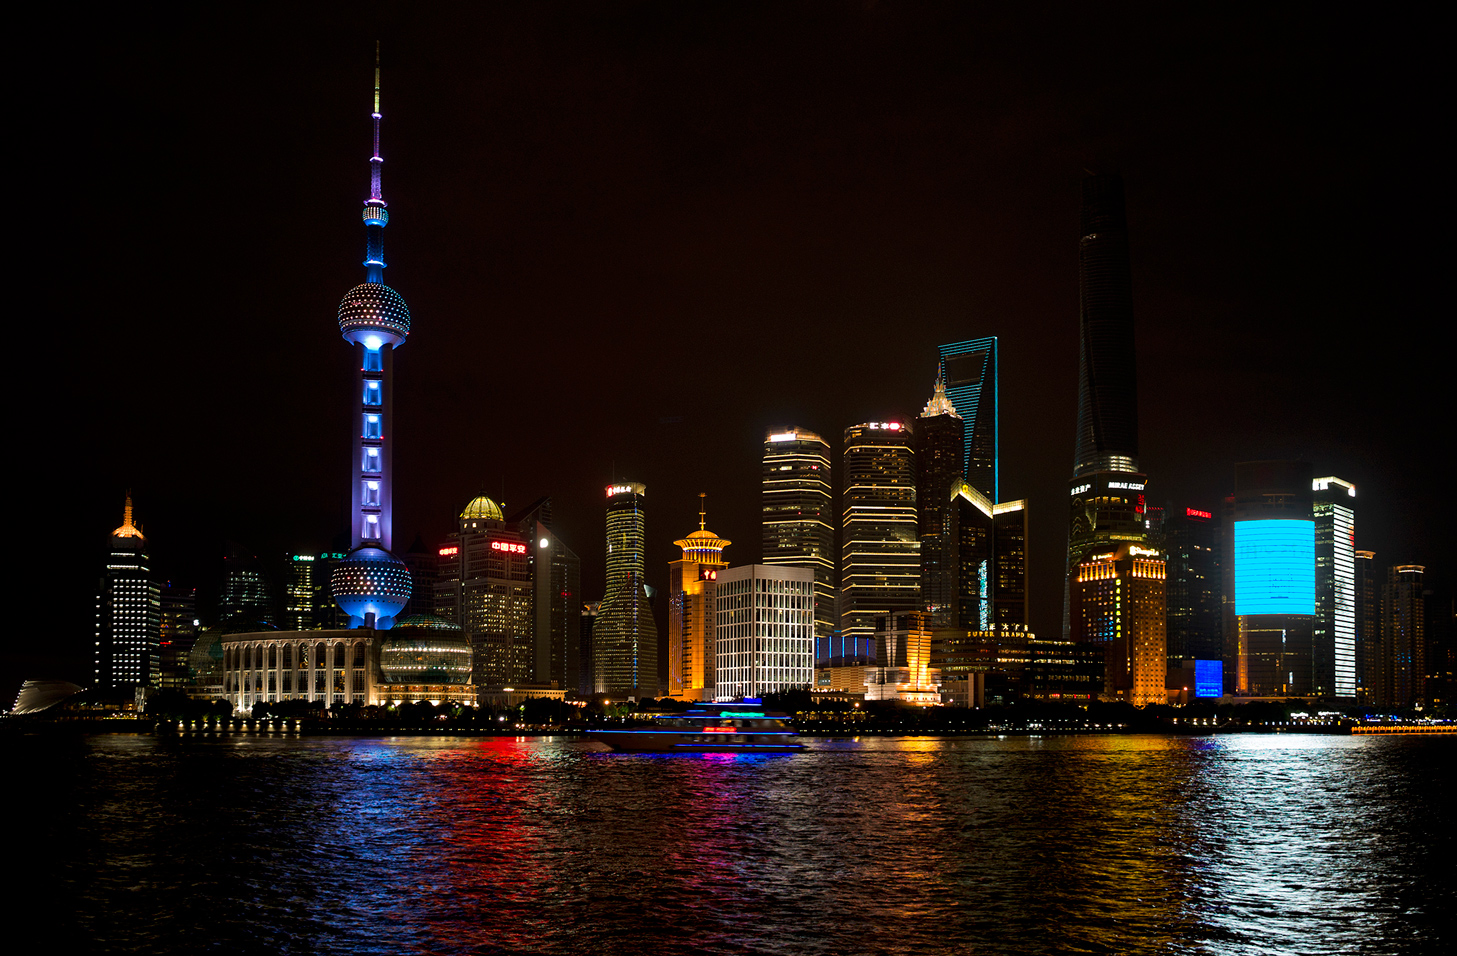 фото "Pudong" метки: пейзаж, архитектура, Китай, Шанхай, ночь, отражения